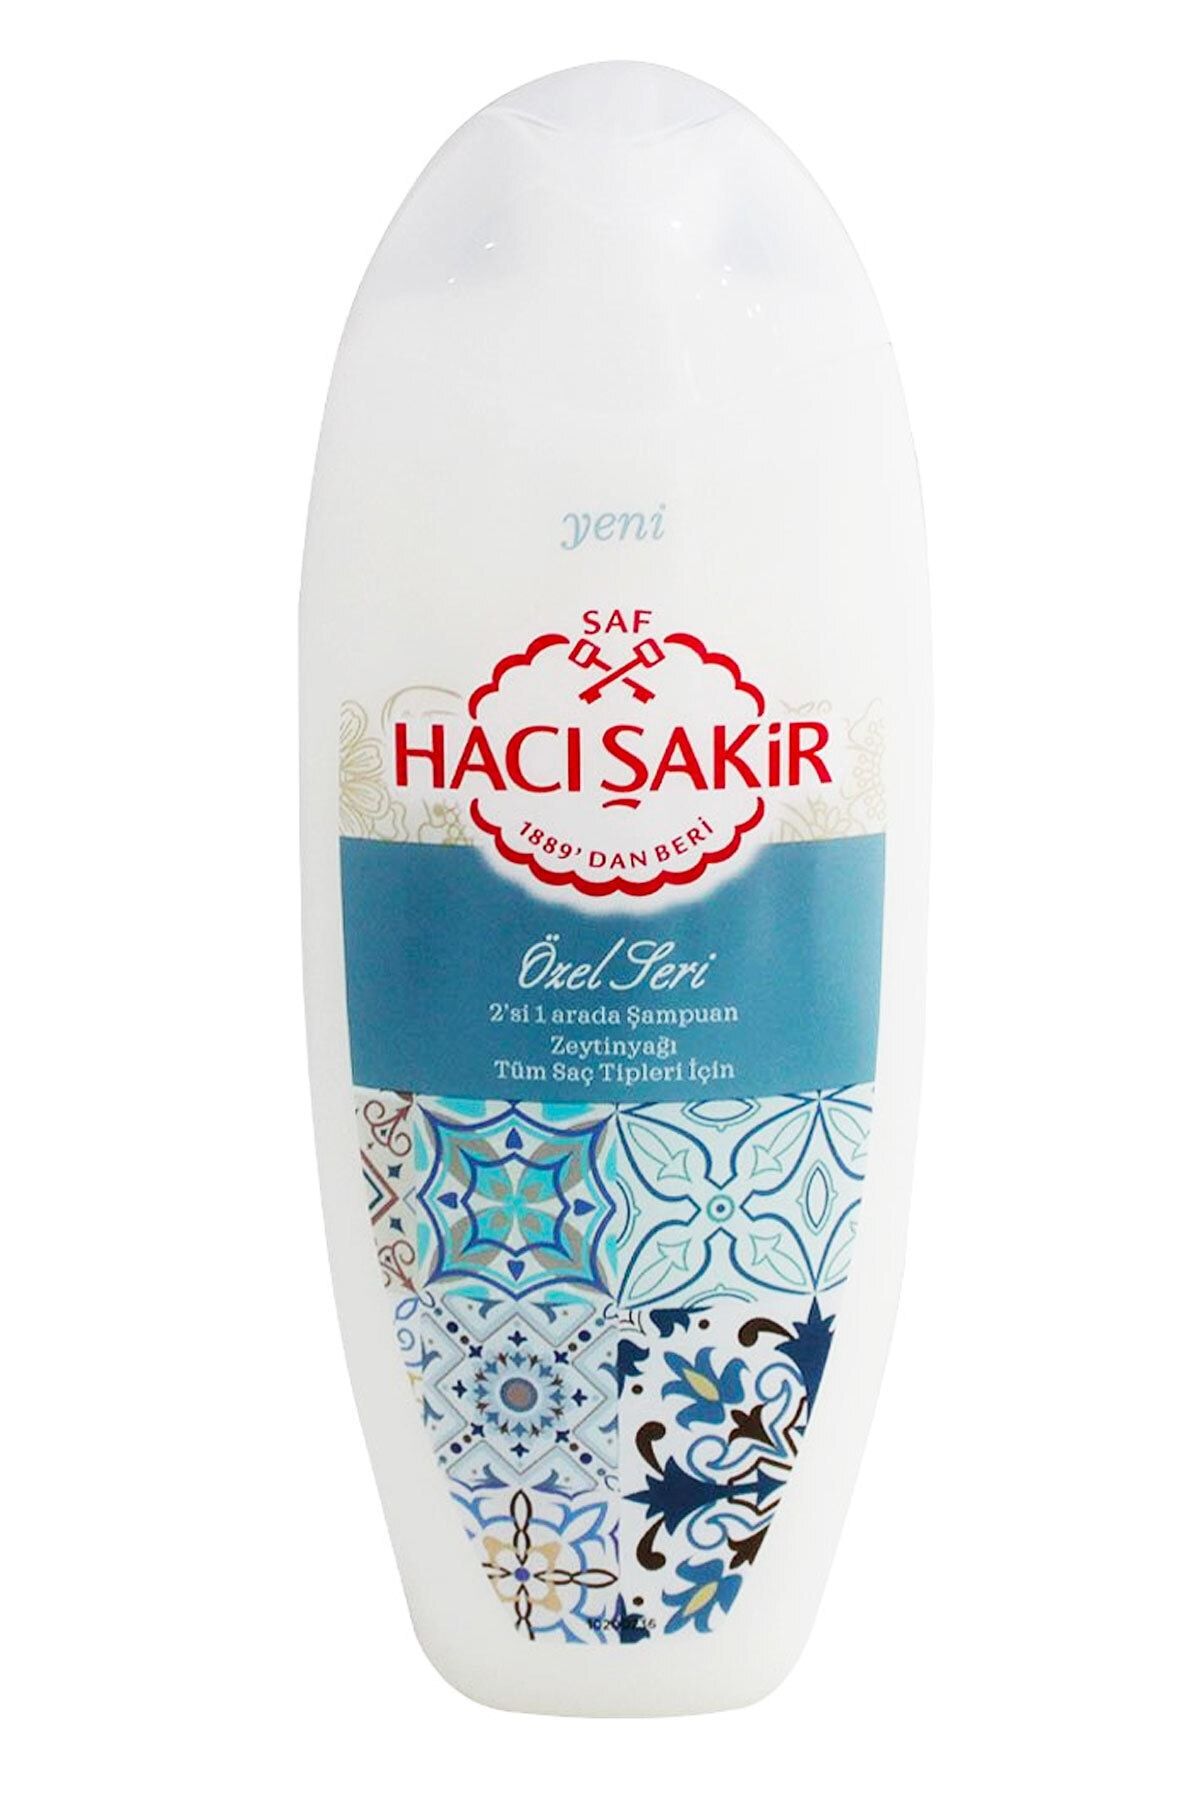 Hacı Şakir Özel Seri Şampuan 500 ml